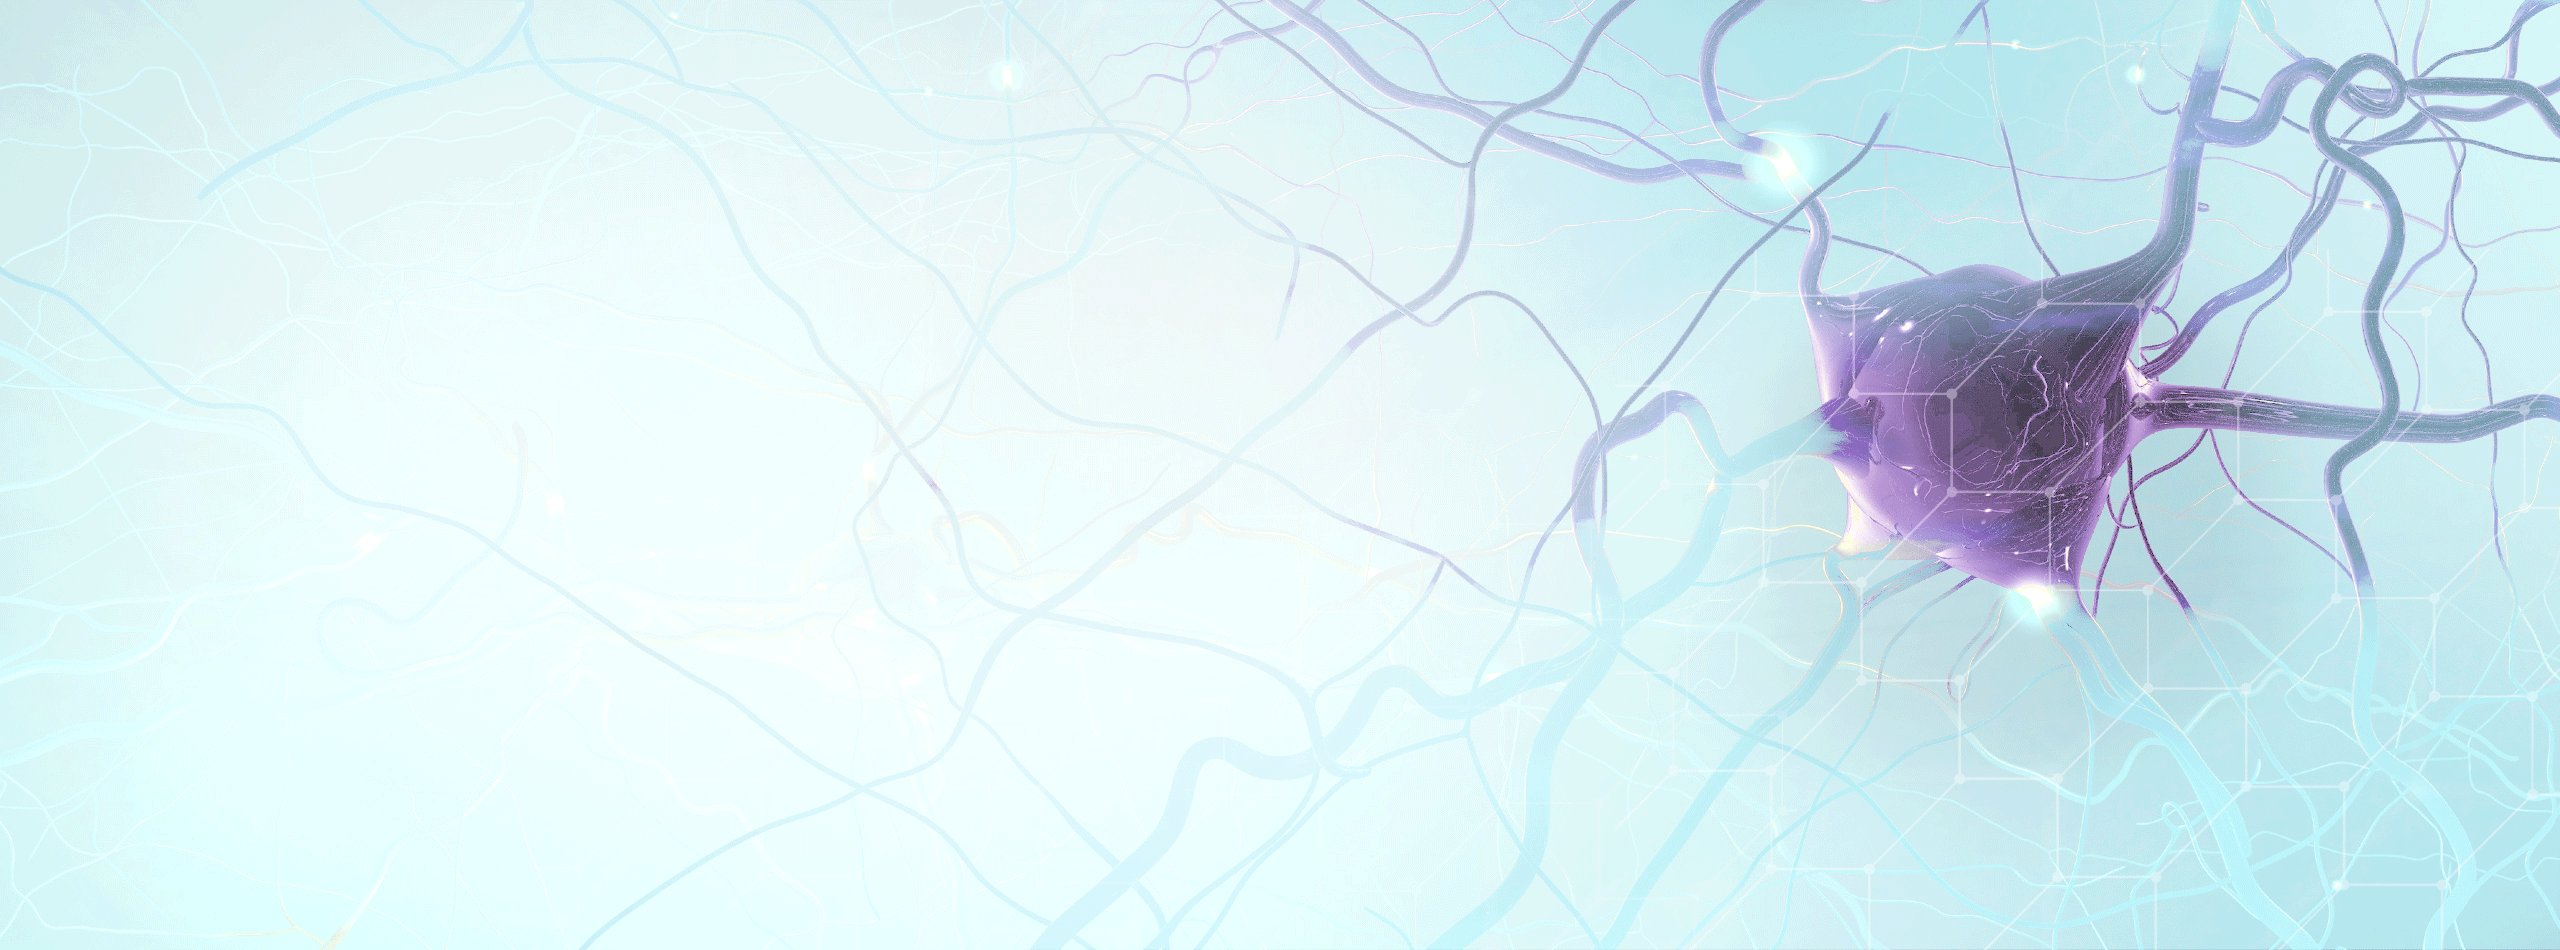 Illustration of neuron